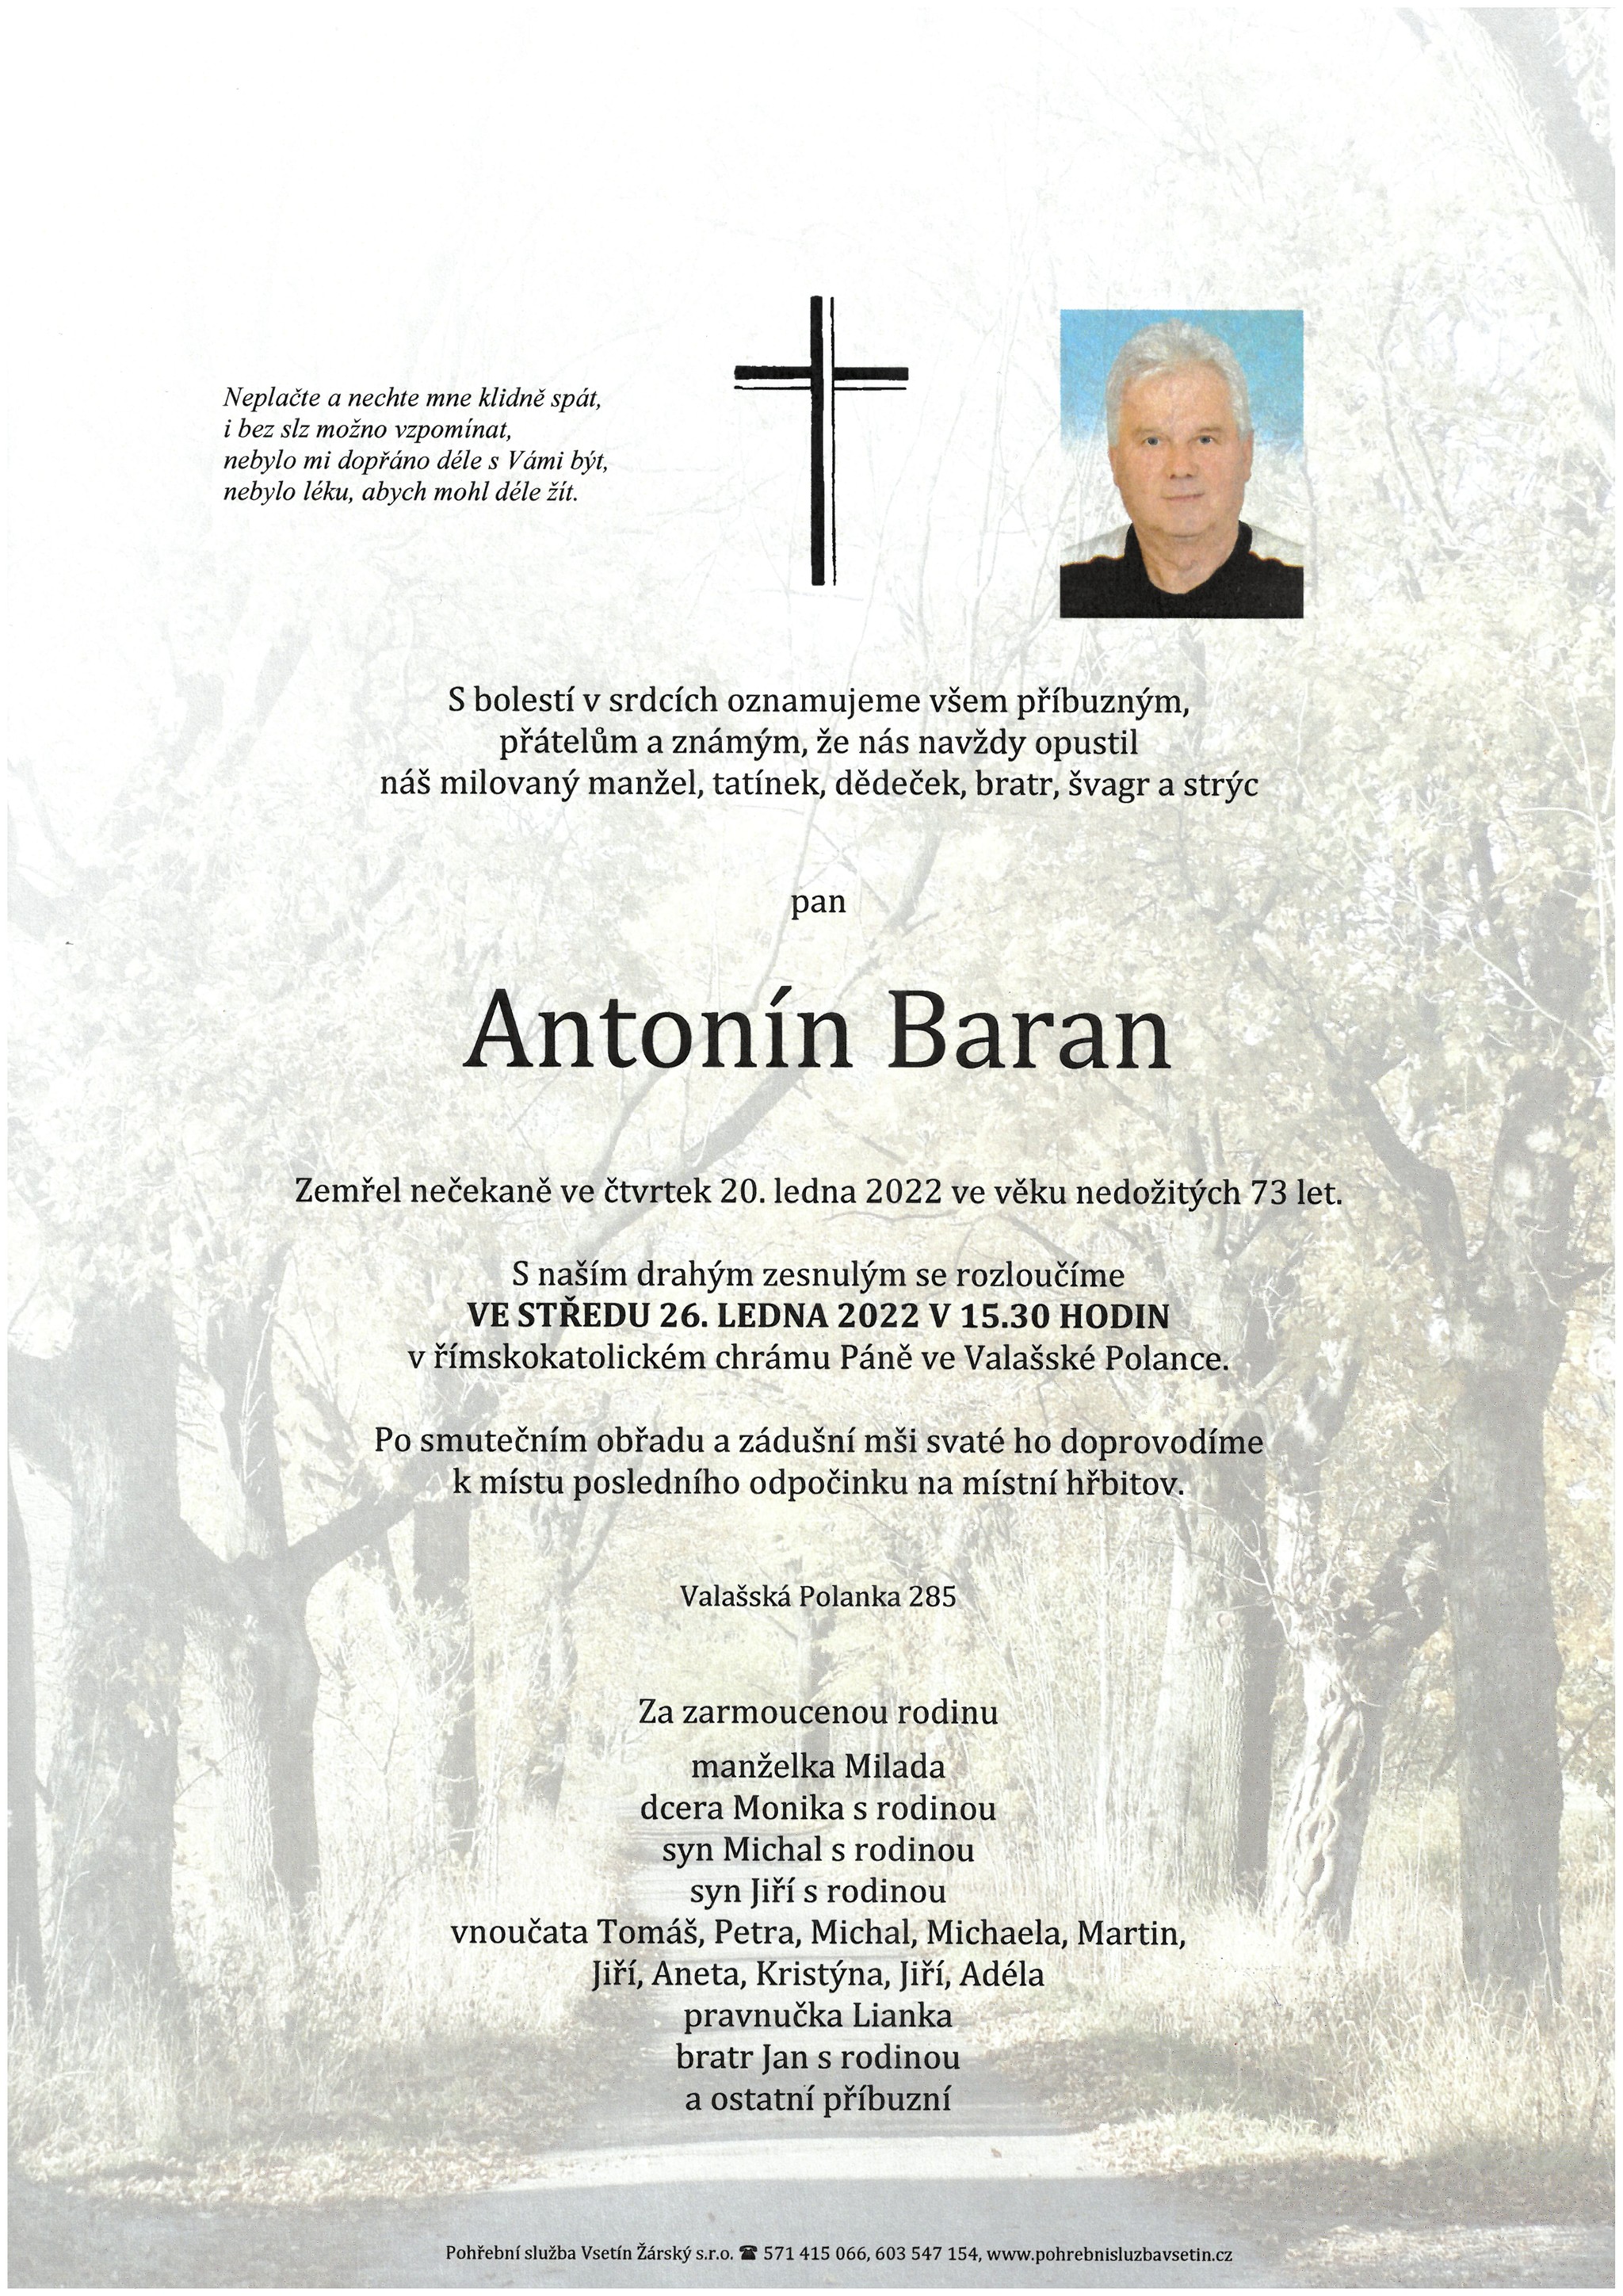 Antonín Baran